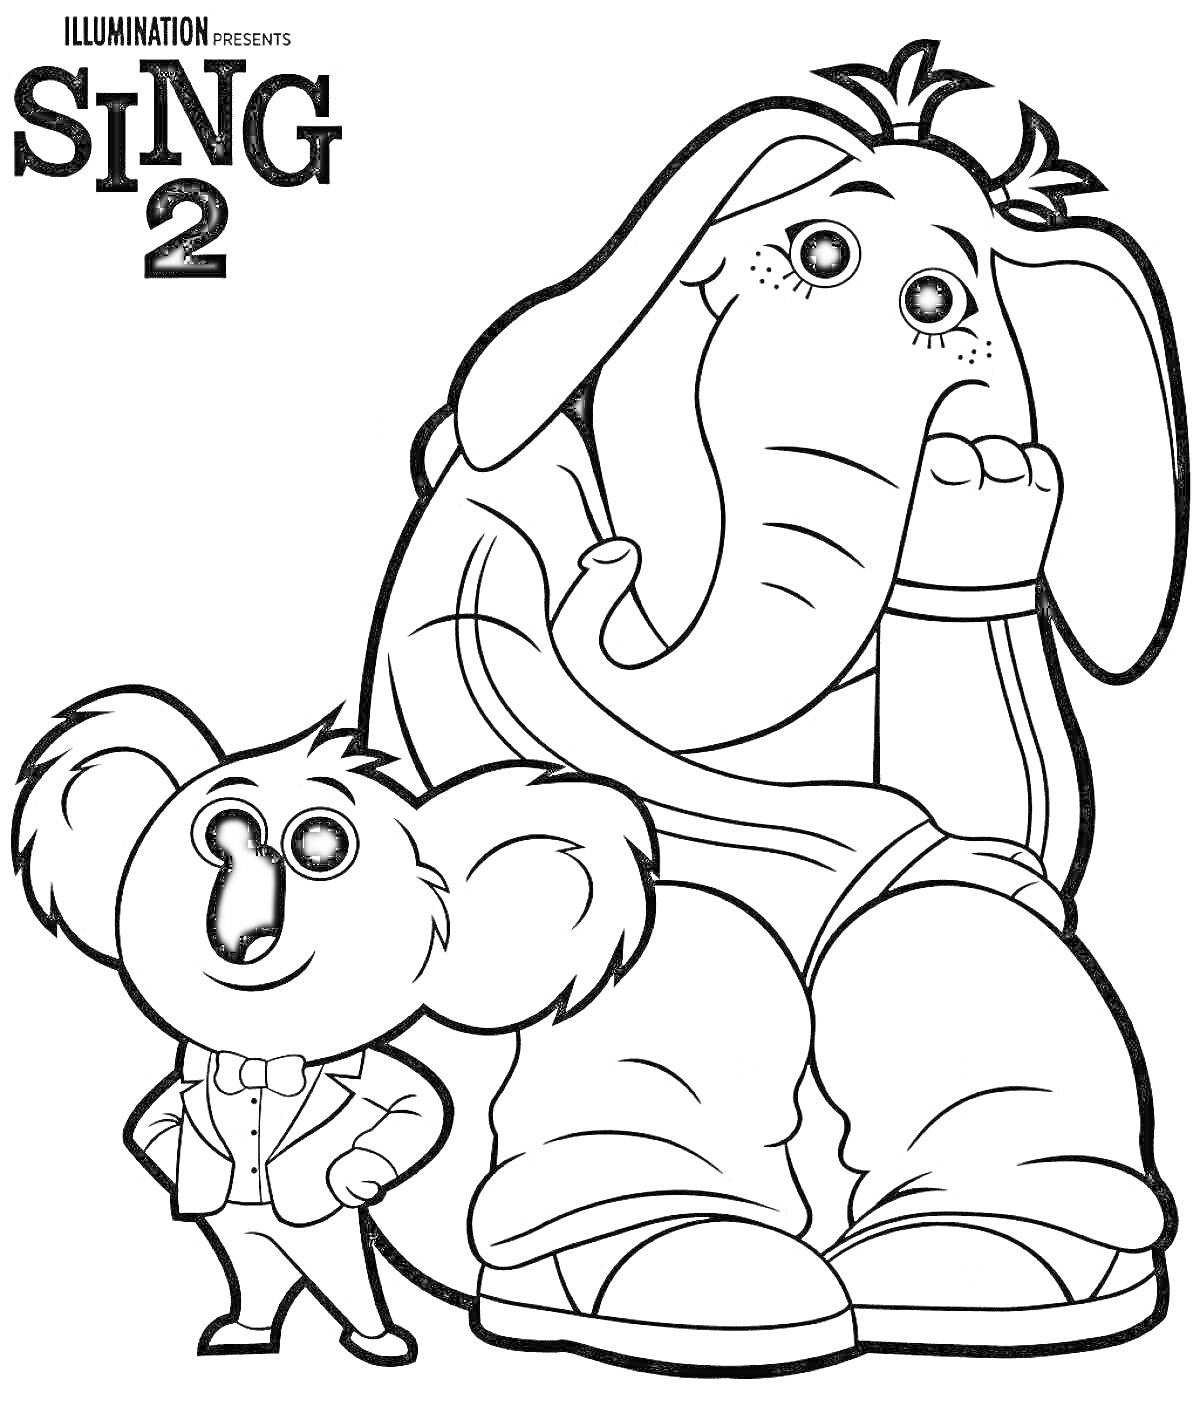 Раскраска Sing 2, коала в костюме и слоненок